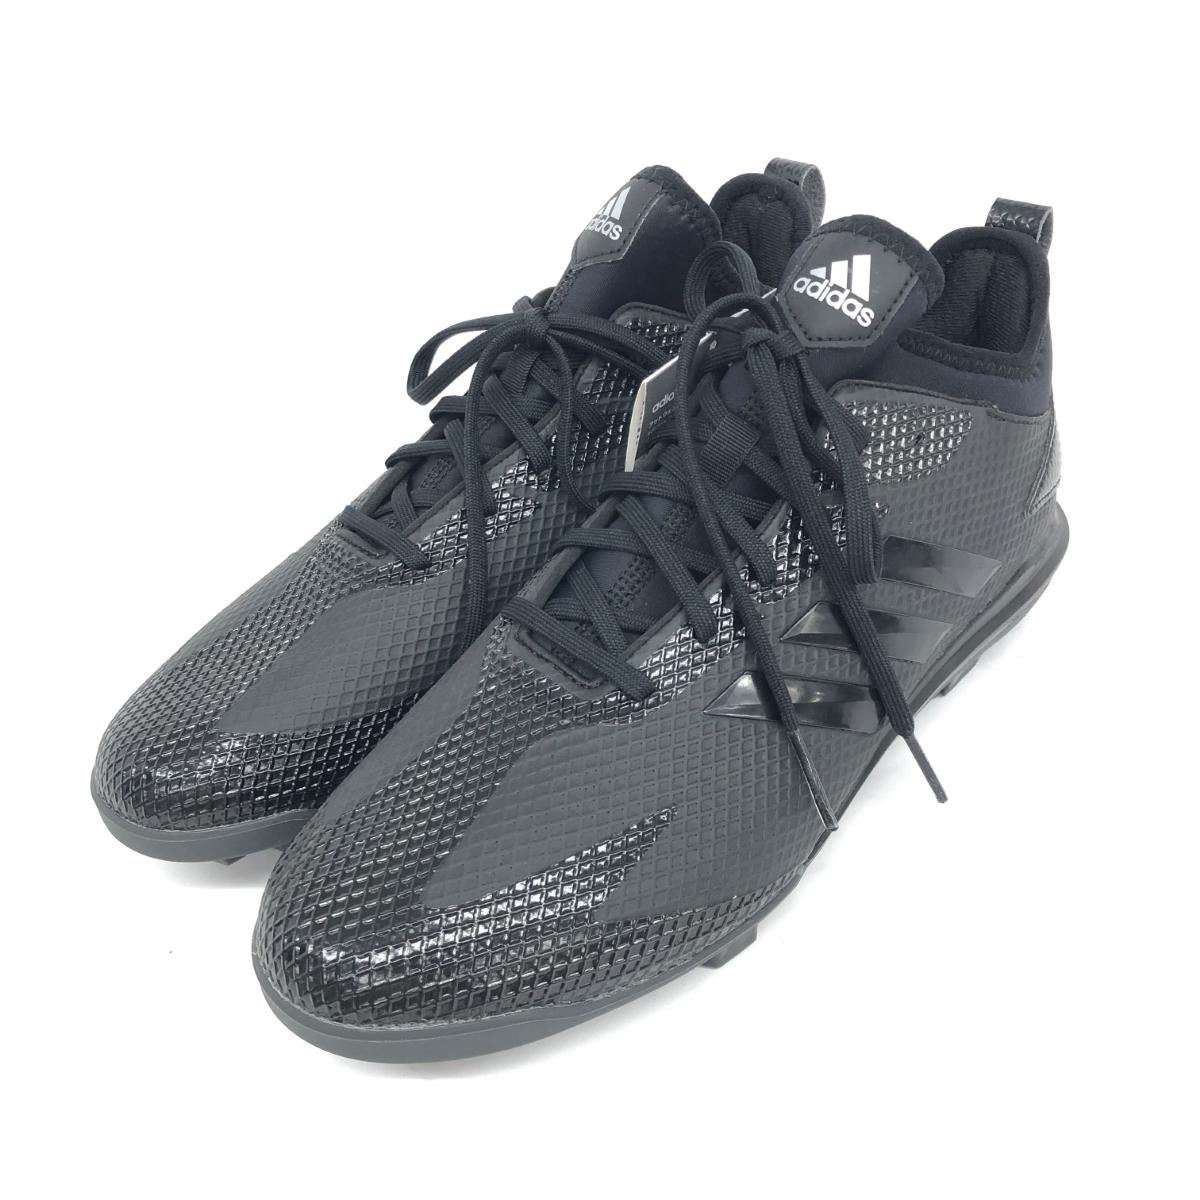 adidas アディダス 野球用スパイク 未使用品 27.0 DB3455 ブラック メンズ 靴 シューズ shoes 【中古】